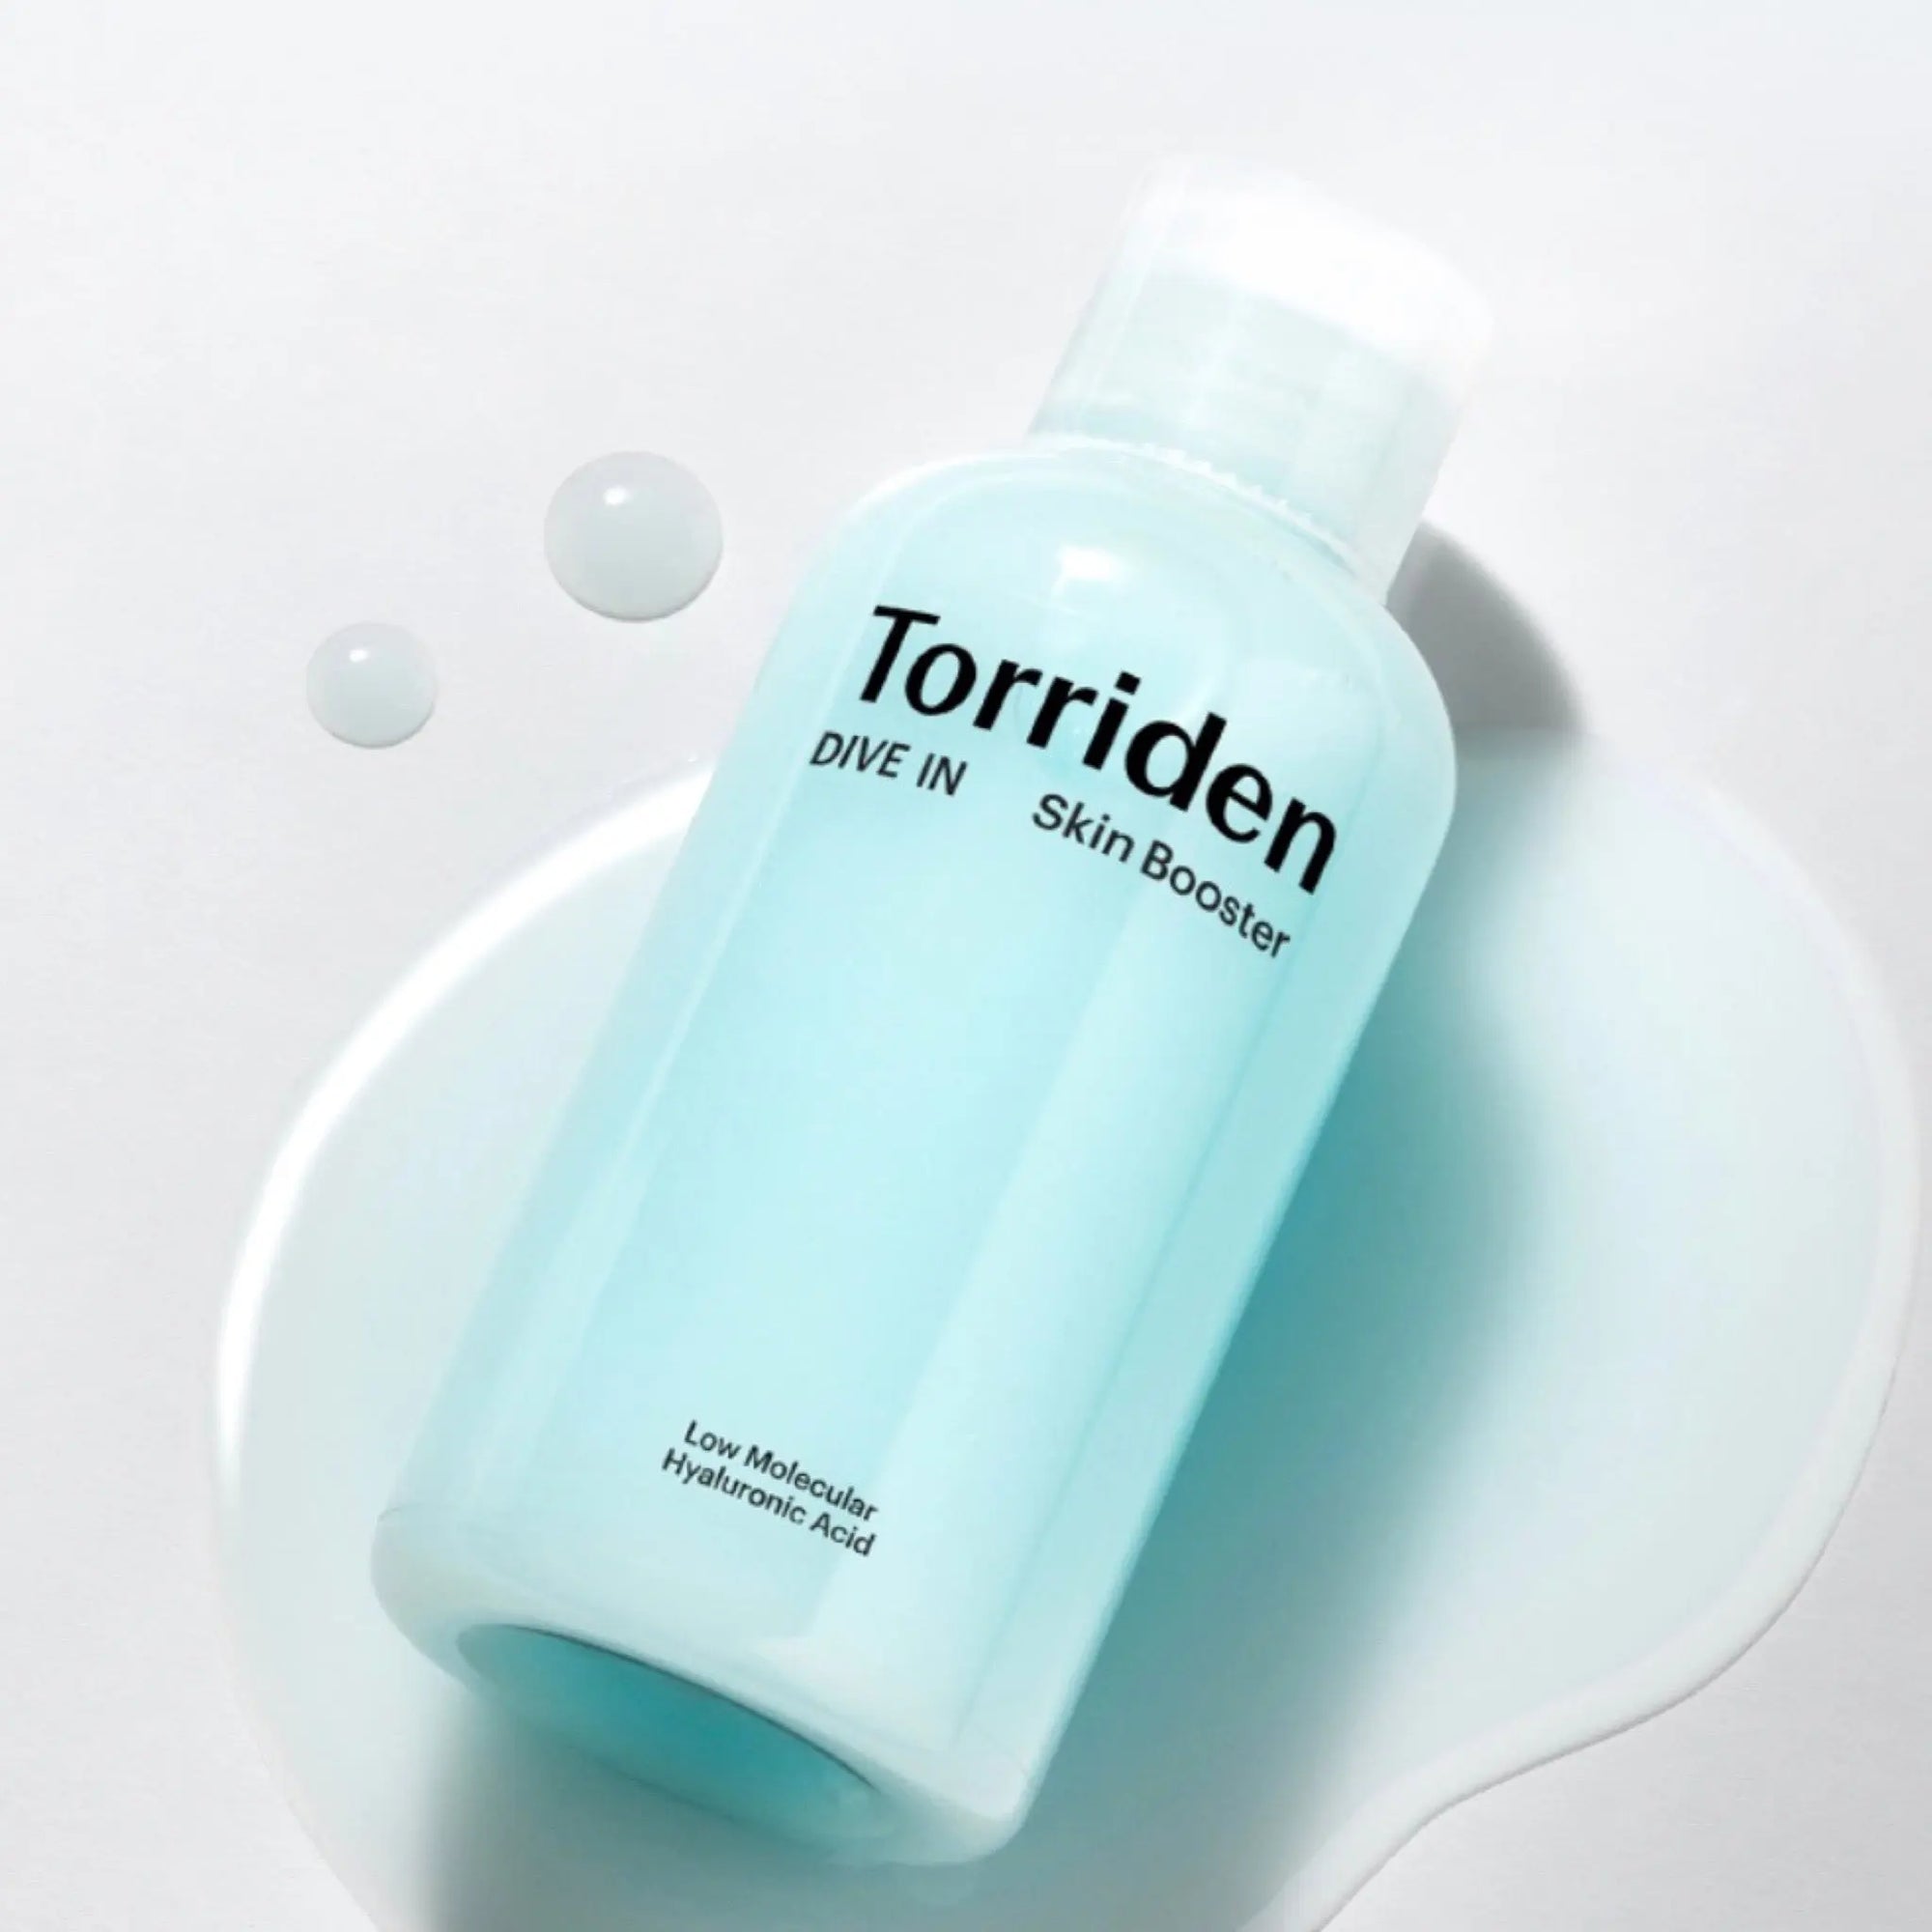 [Torriden] *RENEW* DIVE-IN Low Molecular Hyaluronic Acid Skin Booster WanderShop